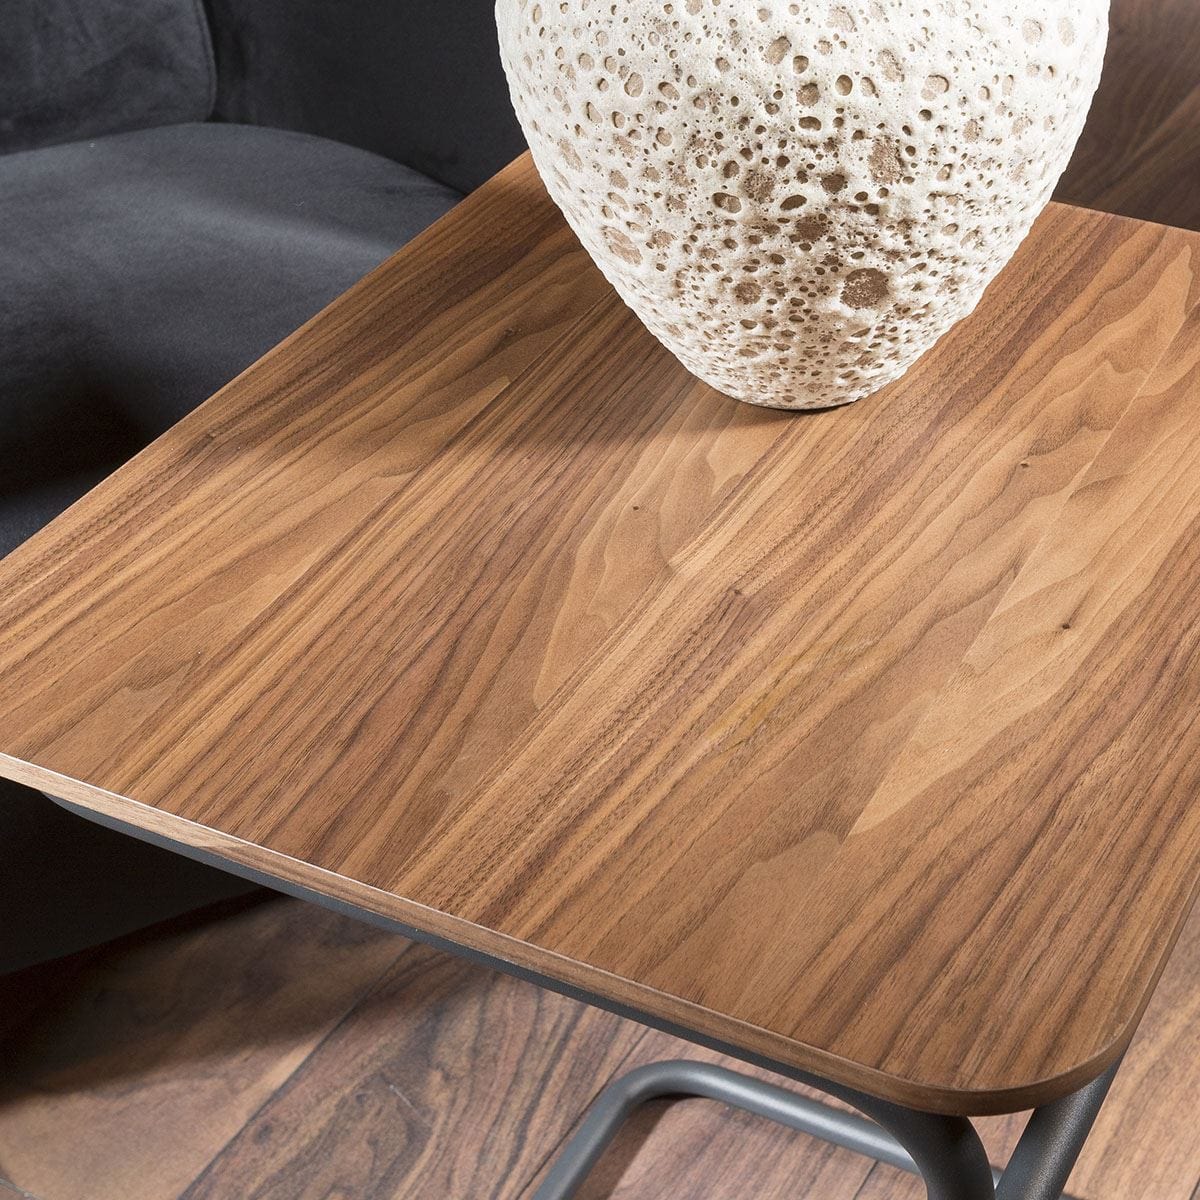 Quatropi Modern Designer Square End / Side Table Walnut Dark Grey Steel Frame